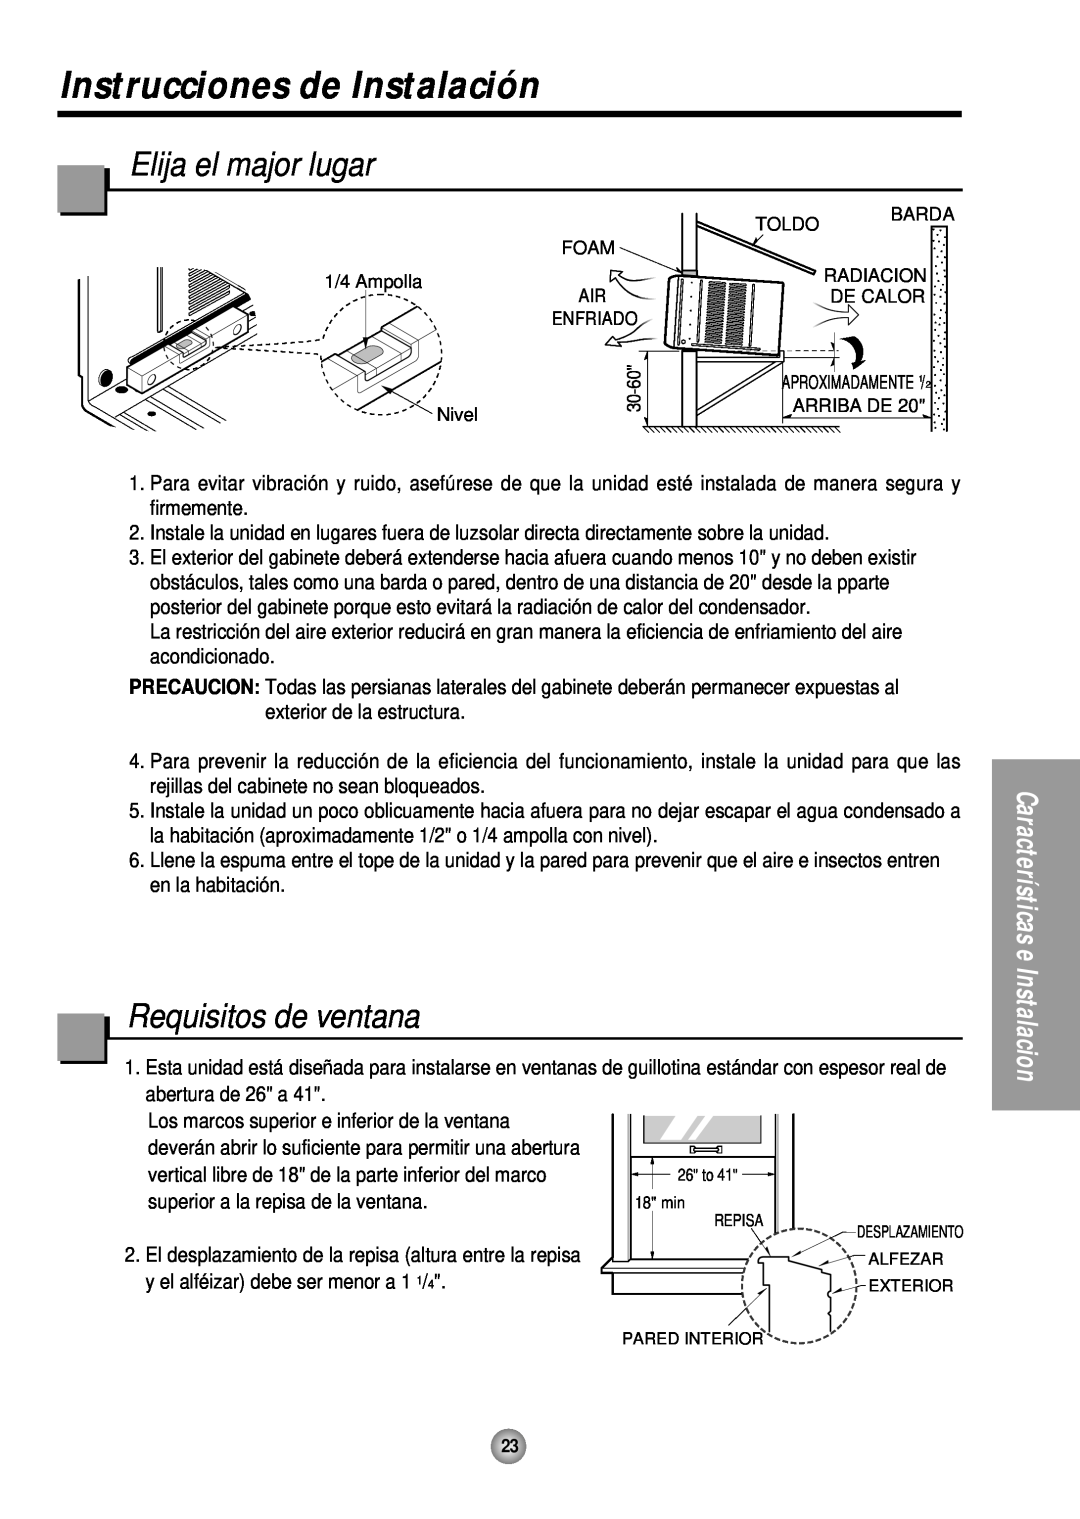 Panasonic HQ-2243TH manual Instrucciones de Instalación, Elija el major lugar, Requisitos de ventana 